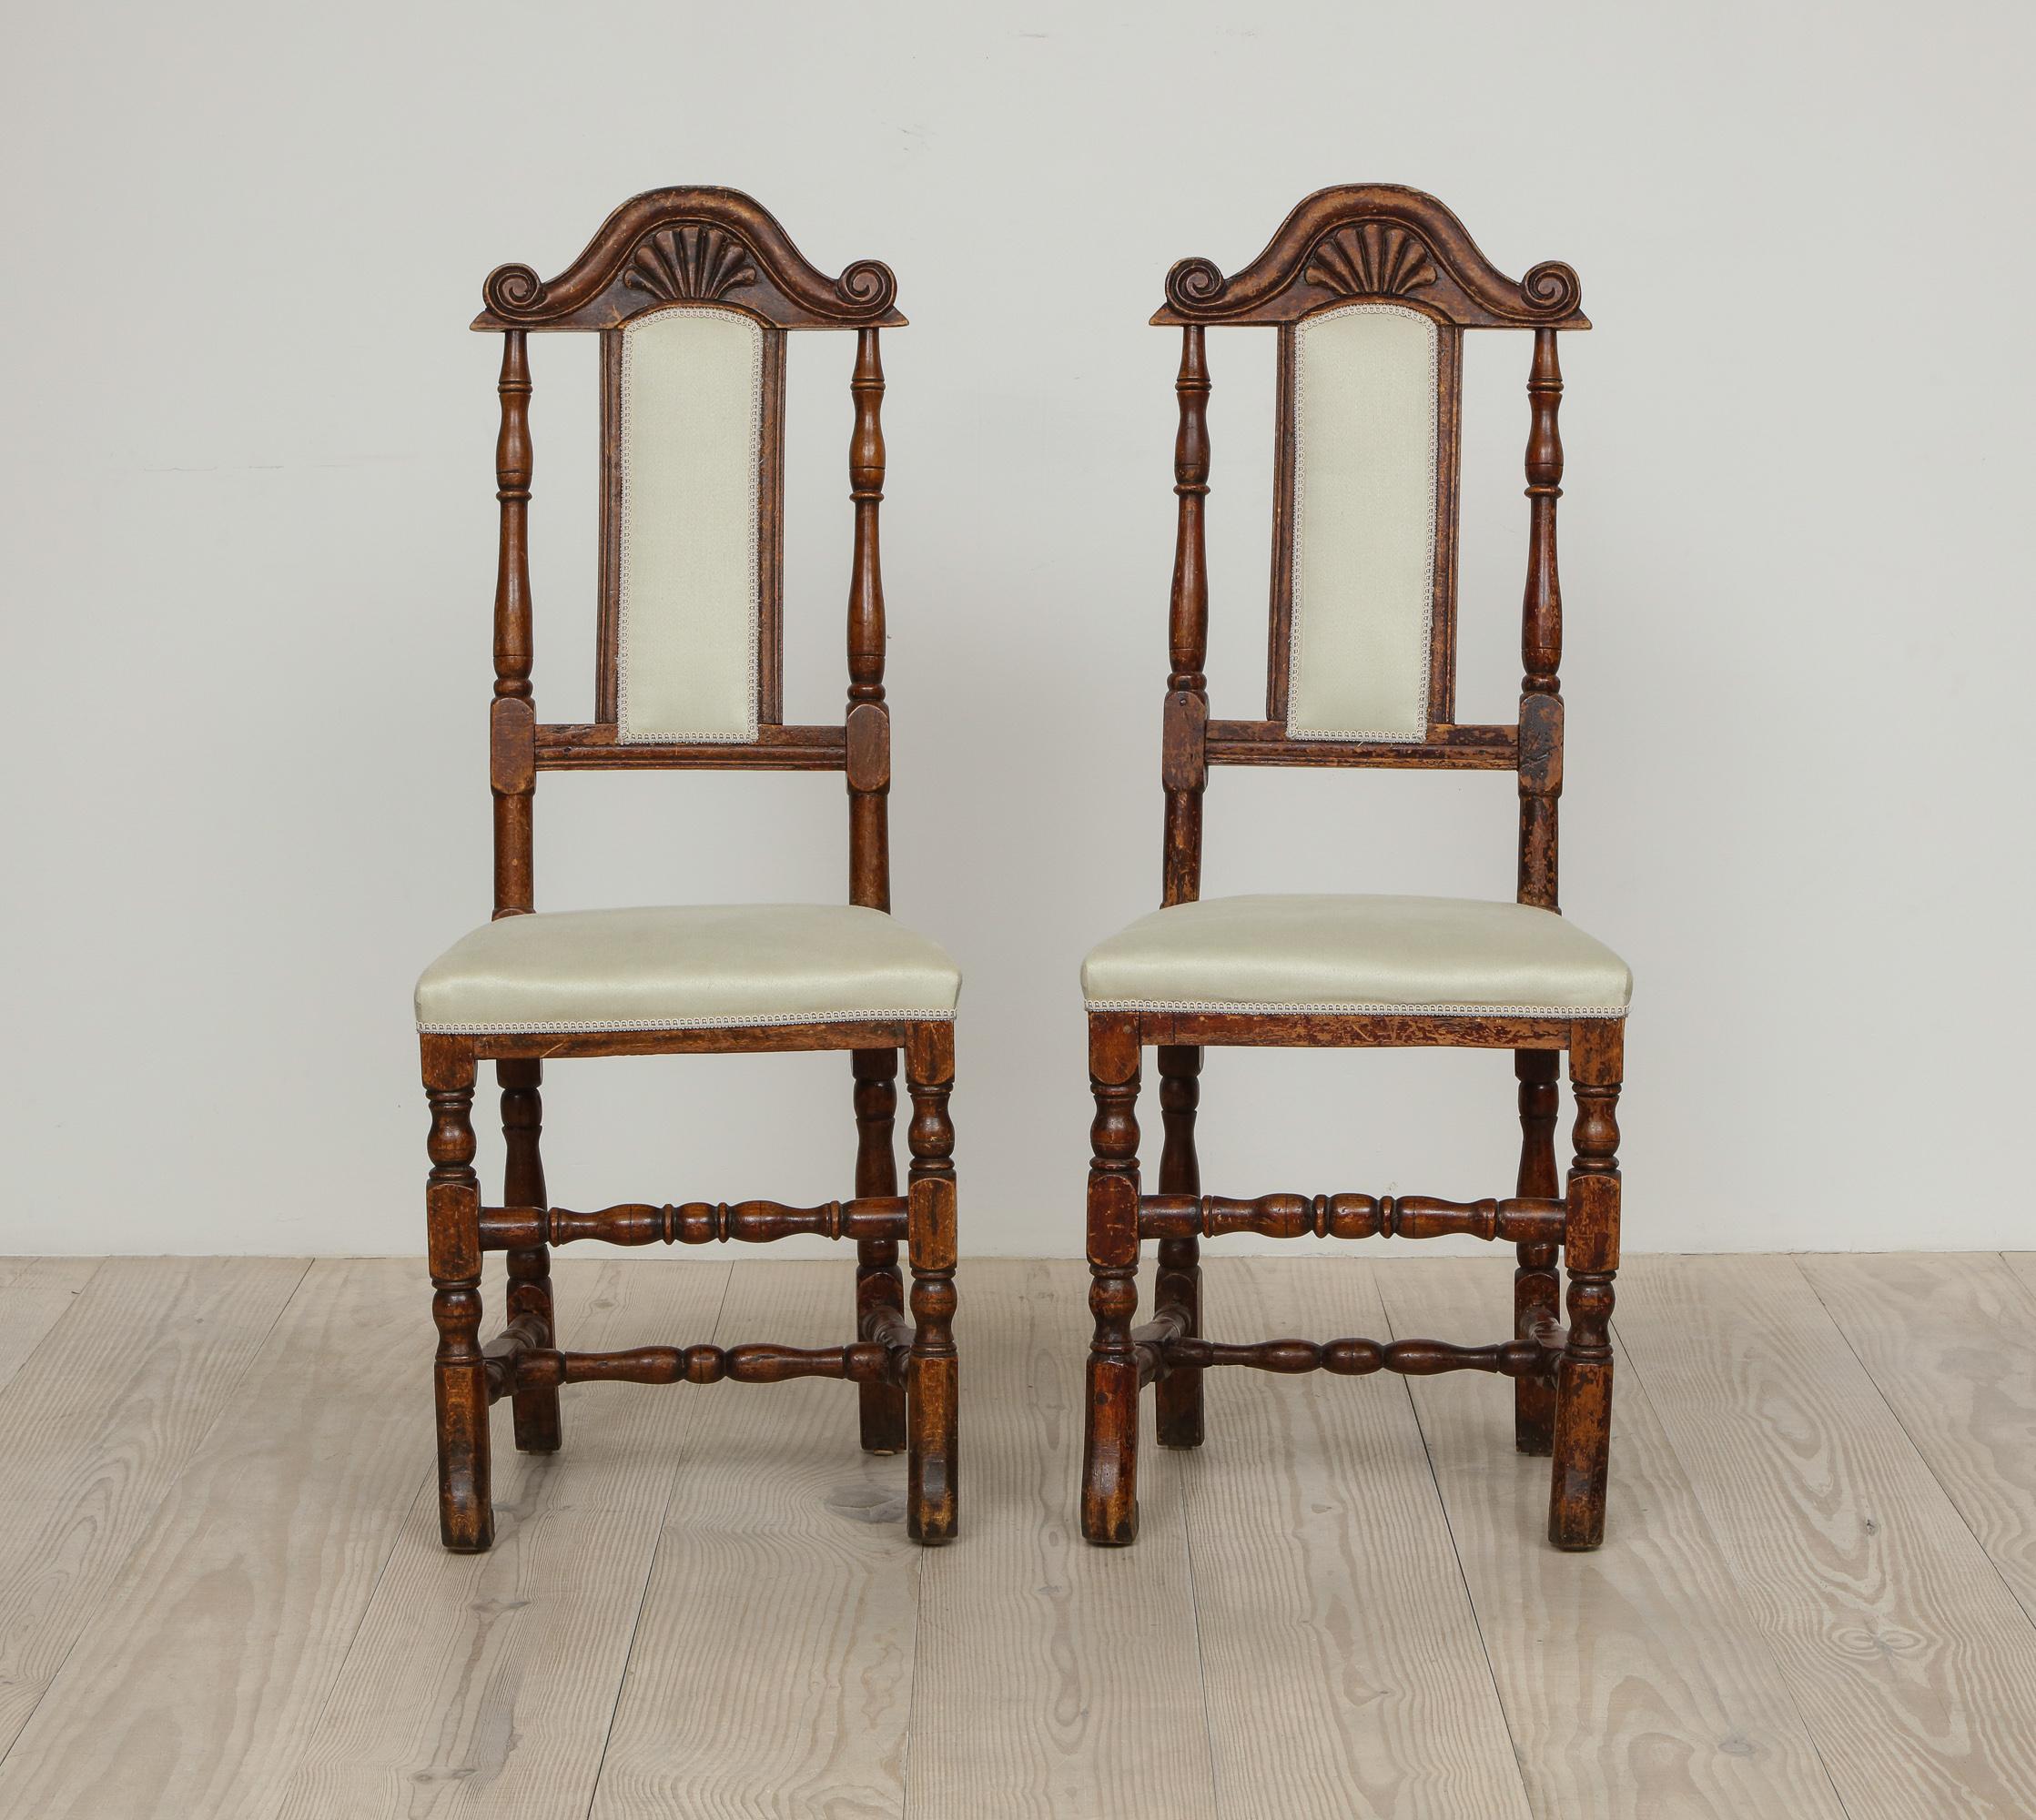 Ein Paar spätbarocke schwedische Stühle, Herkunft: Schweden, um 1750 -1760, neu gepolstert mit Leinensatin von Rogers & Goffigon, das Holz nussbaumähnlich gebeizt. 

Die Form dieser Stühle, einschließlich der schmalen Rückenlehne, die von einer